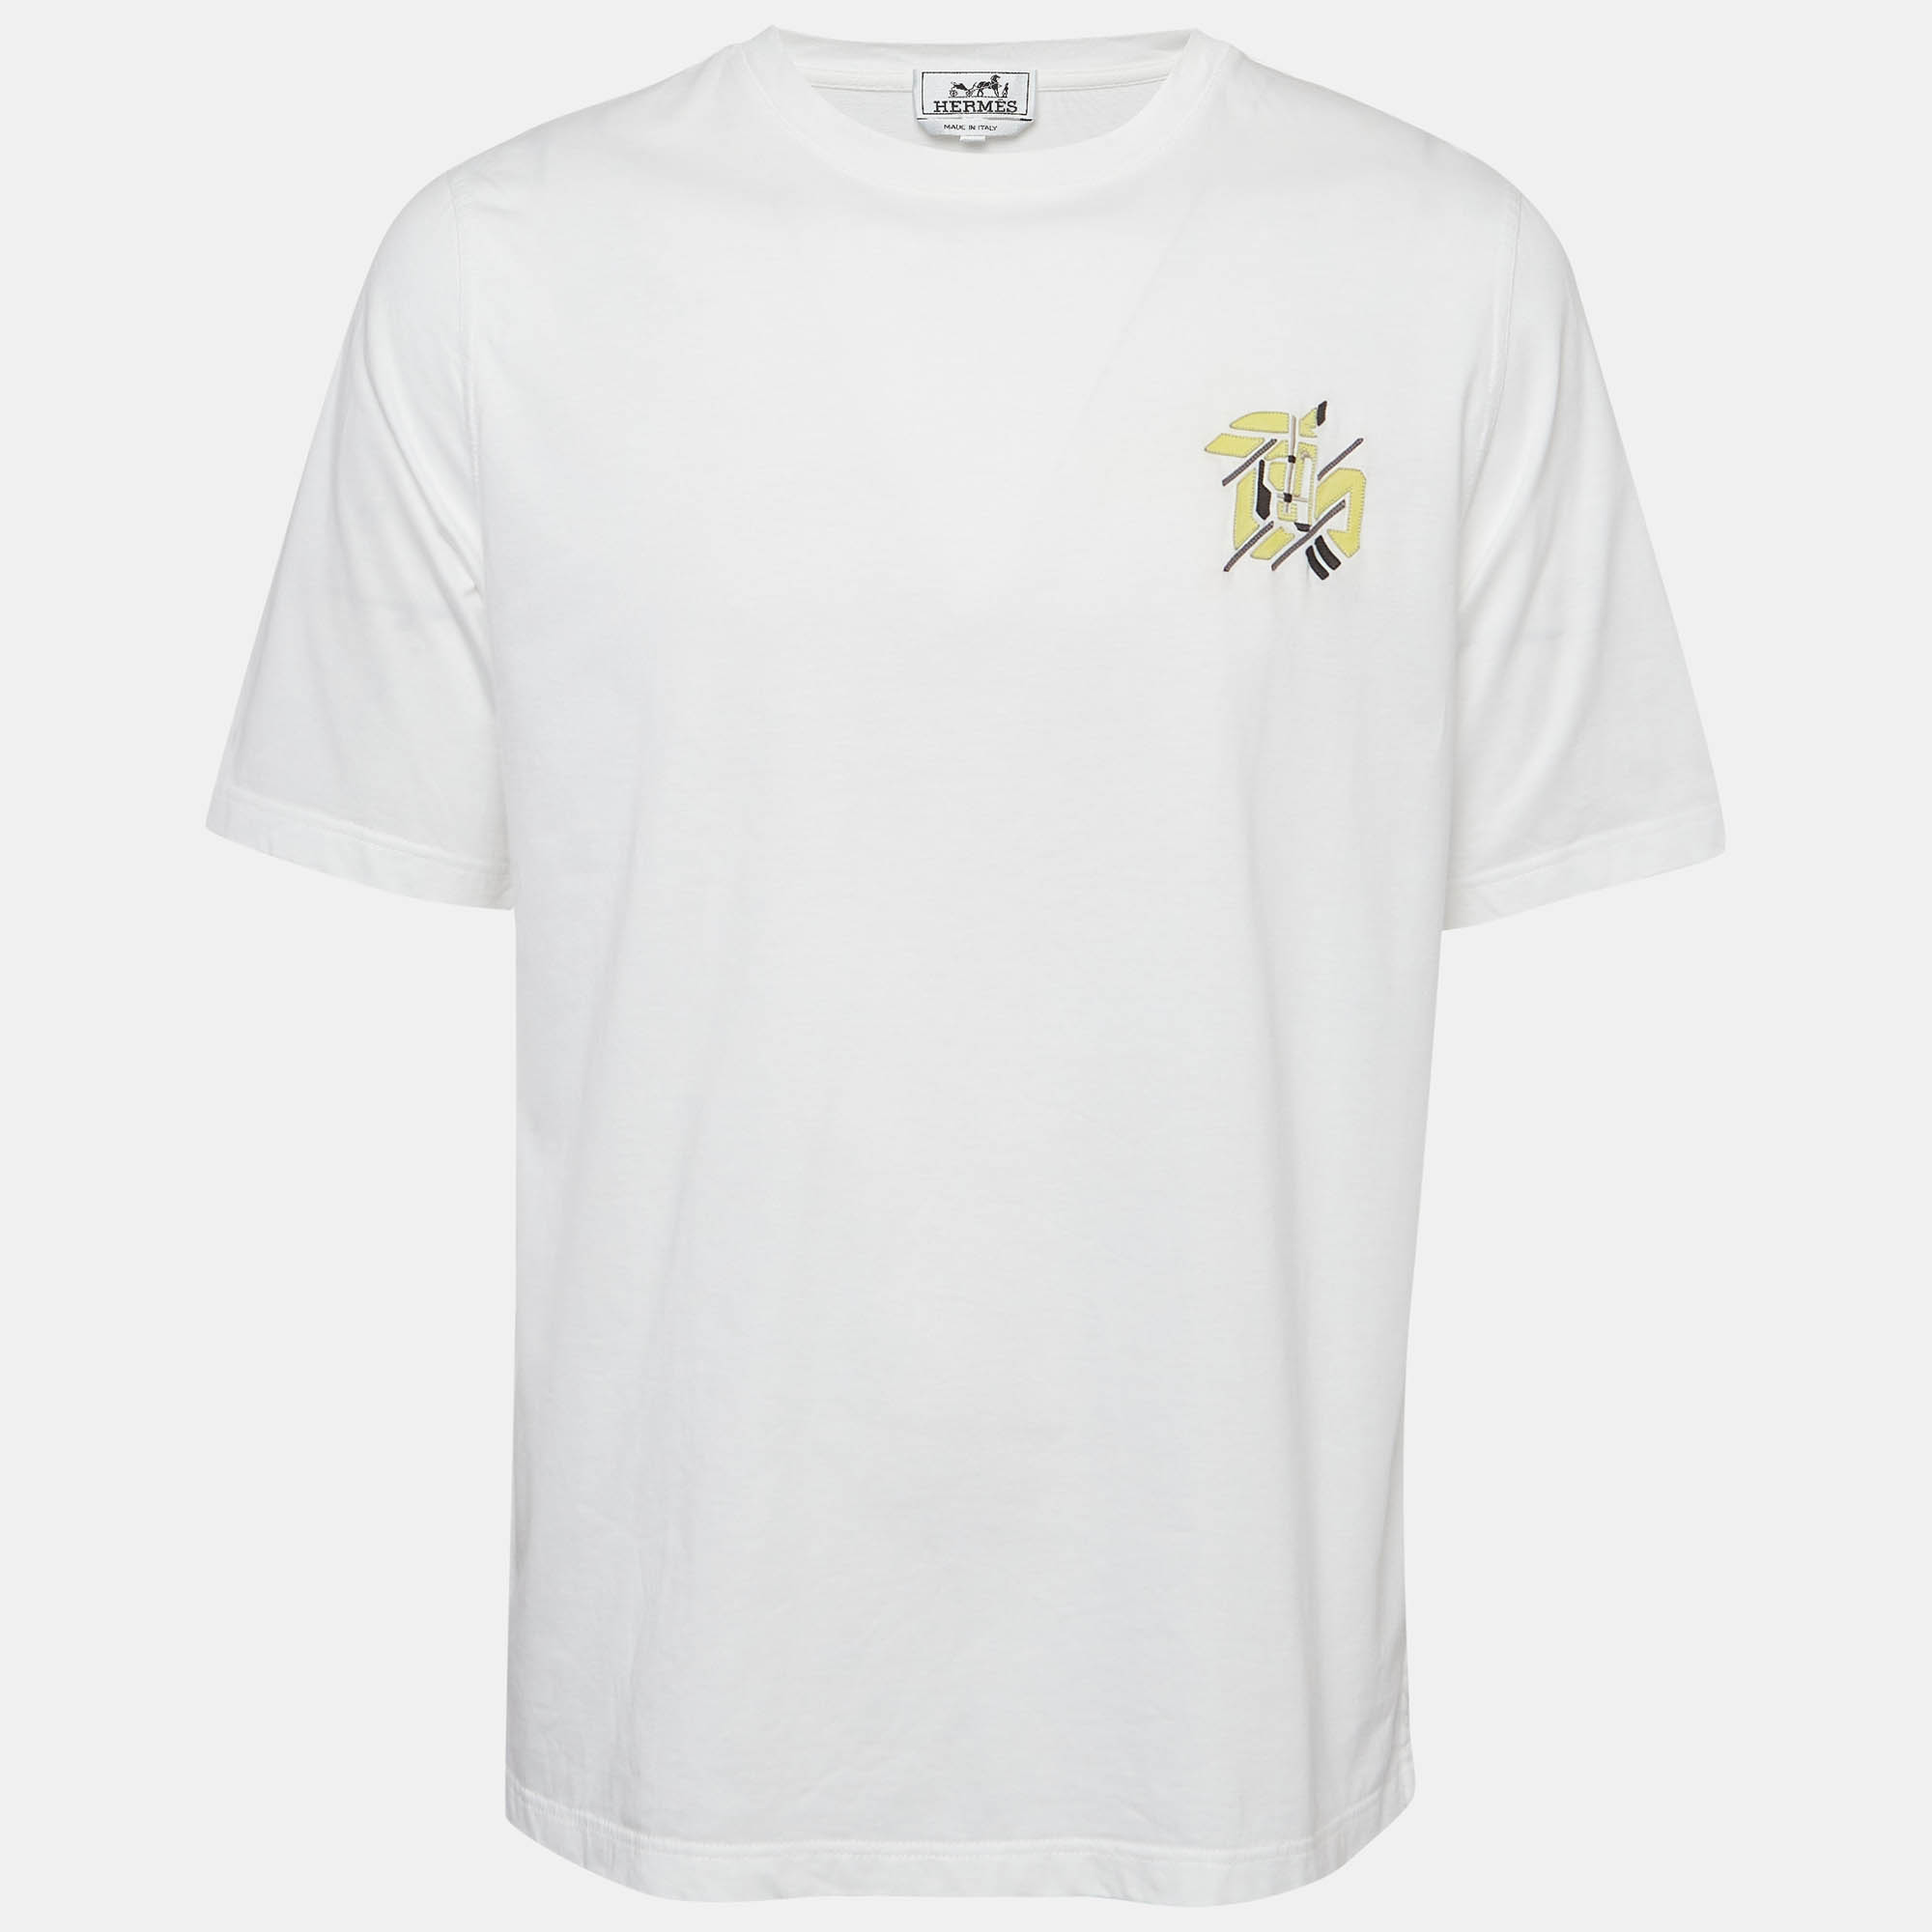 

Hermes White Leather Applique Cotton Knit Crew Neck T-Shirt L